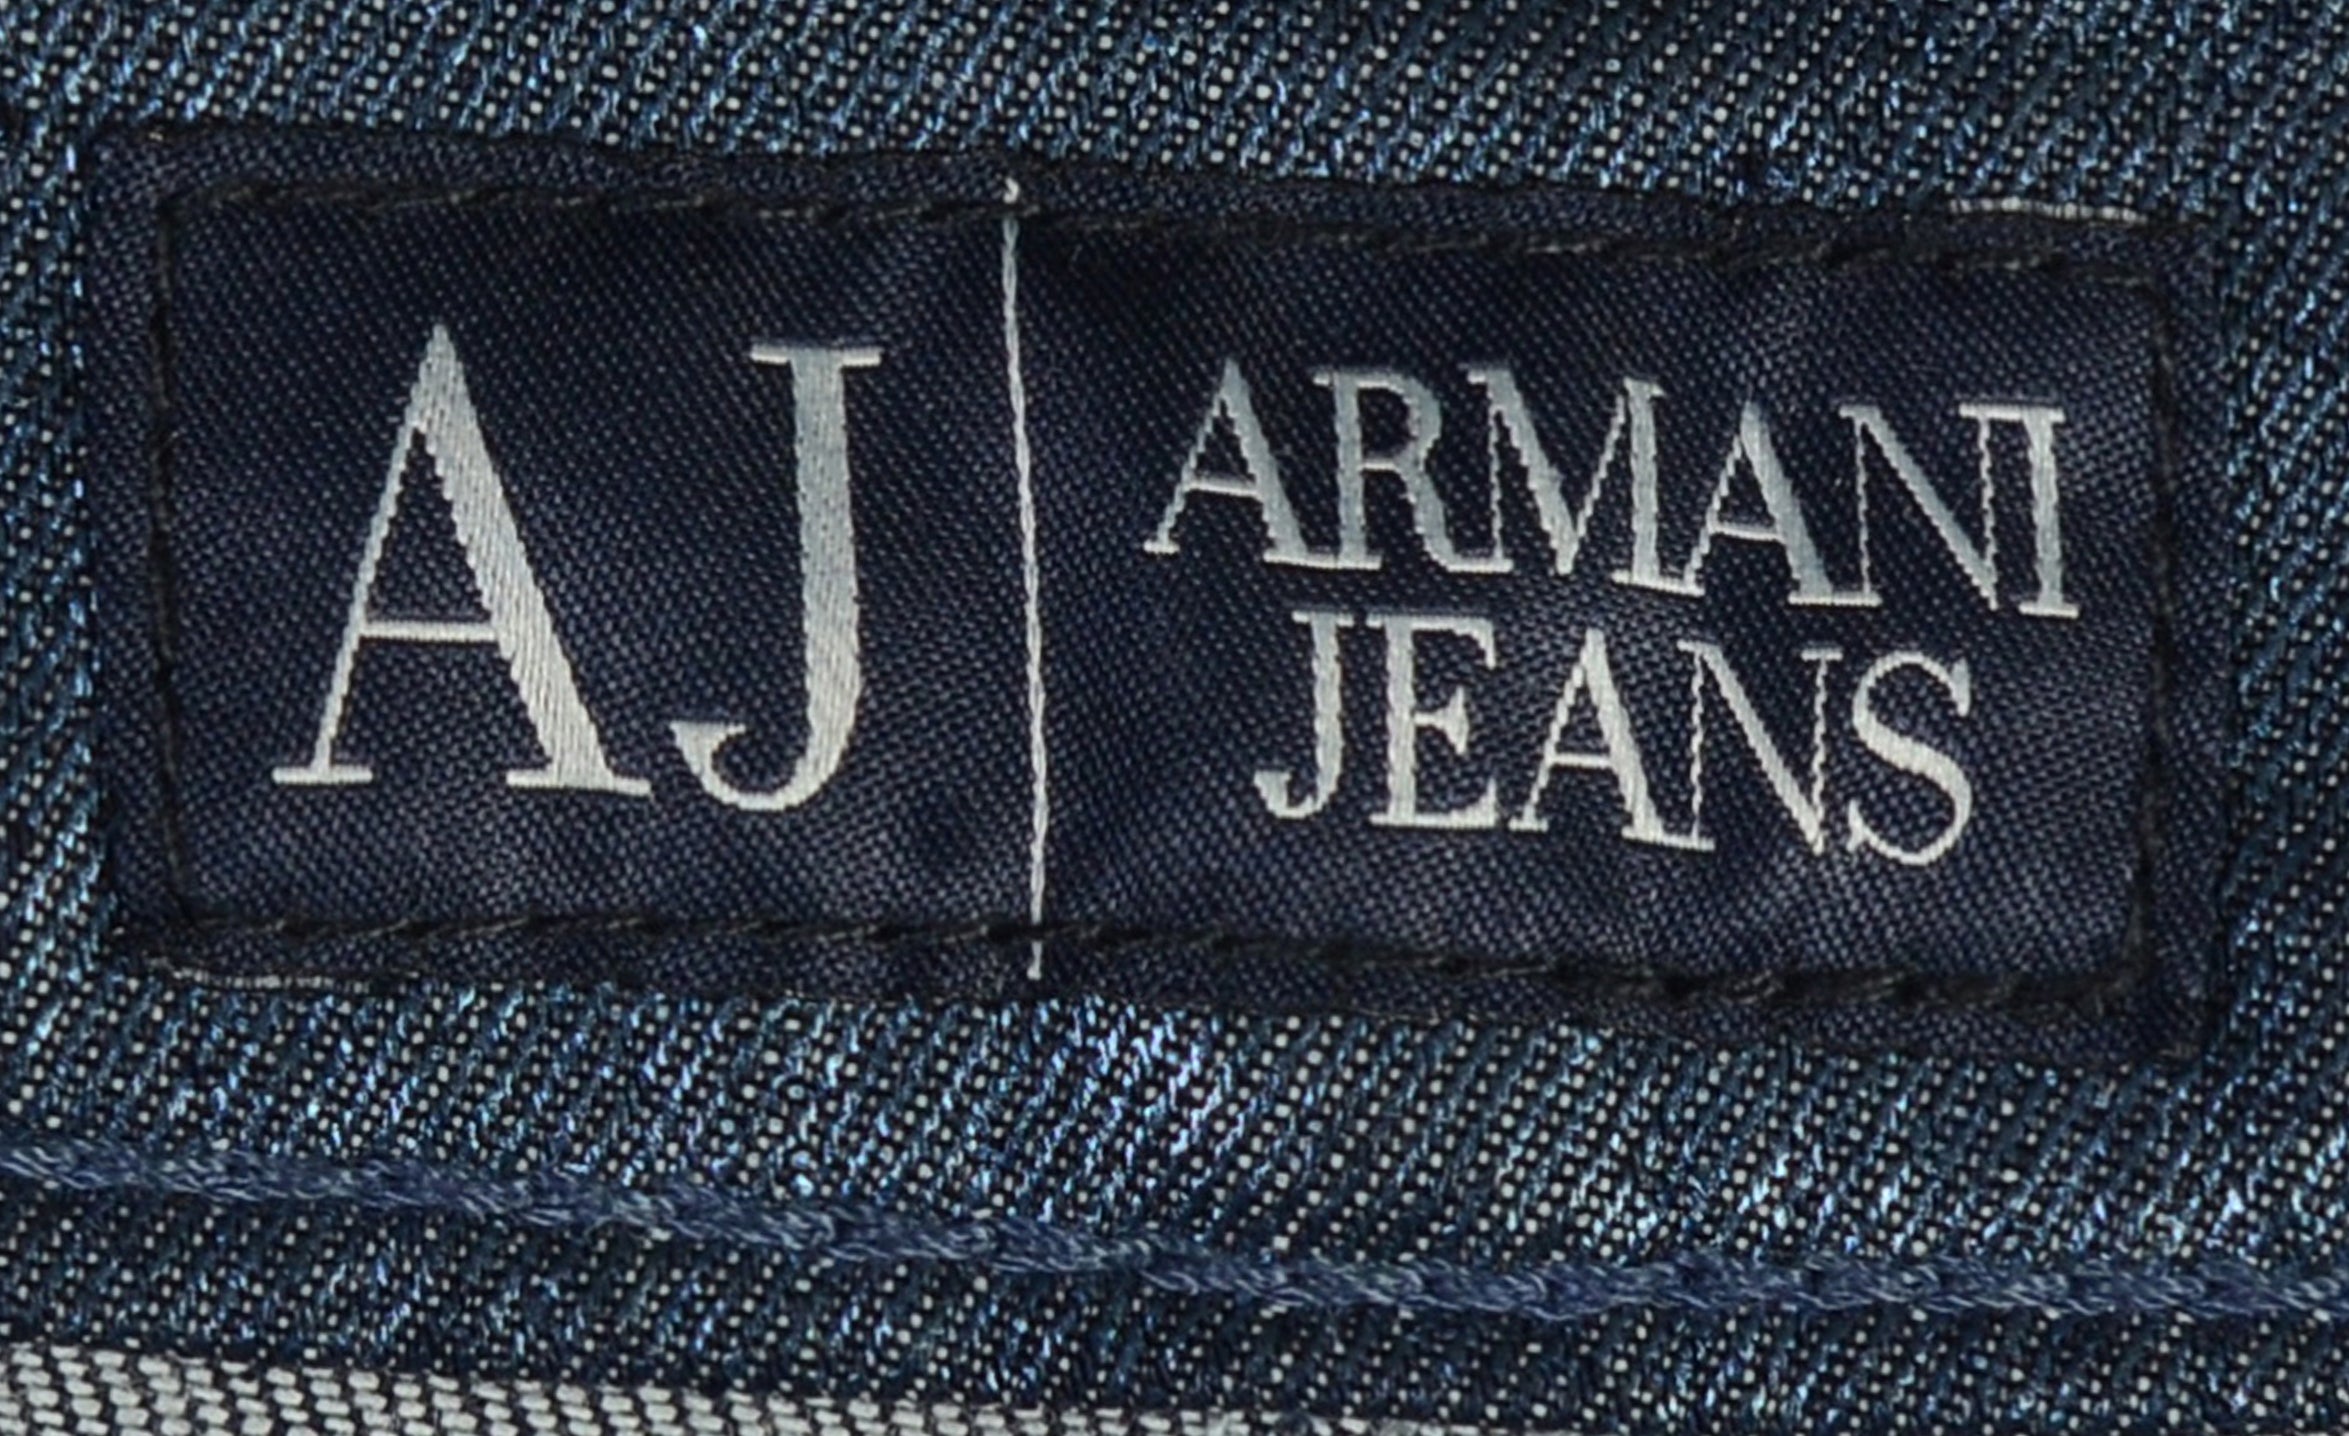 AJ ARMANI JEANS Blue Cotton Stretch Jeans Pants NEW US 29 – SARTORIALE